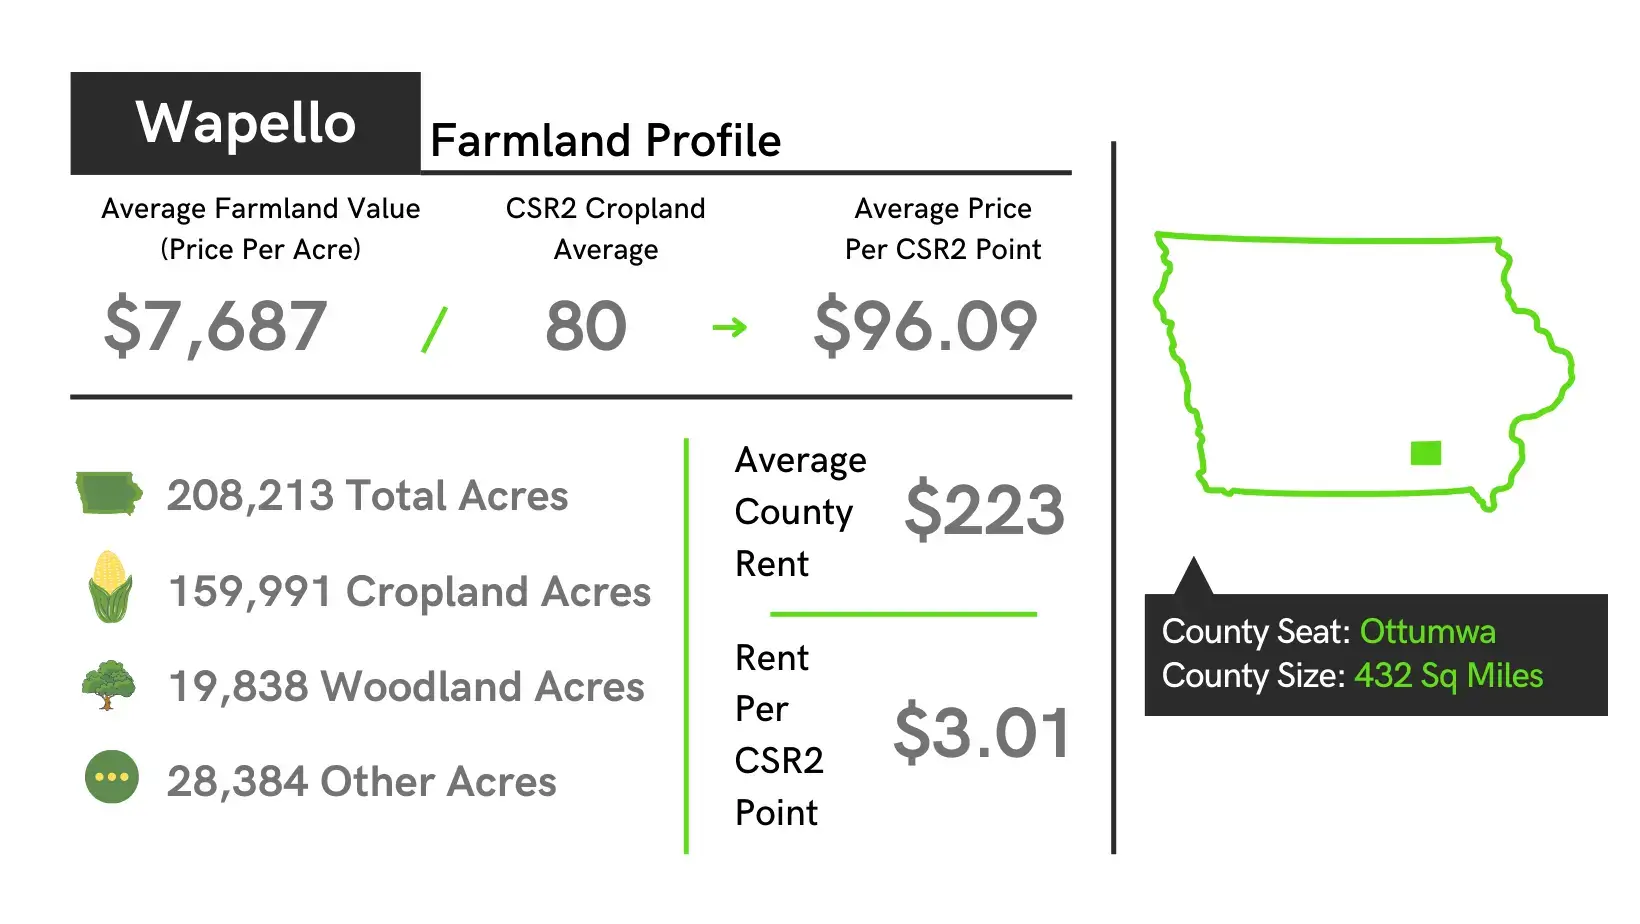 Wapello County Farmland Profile